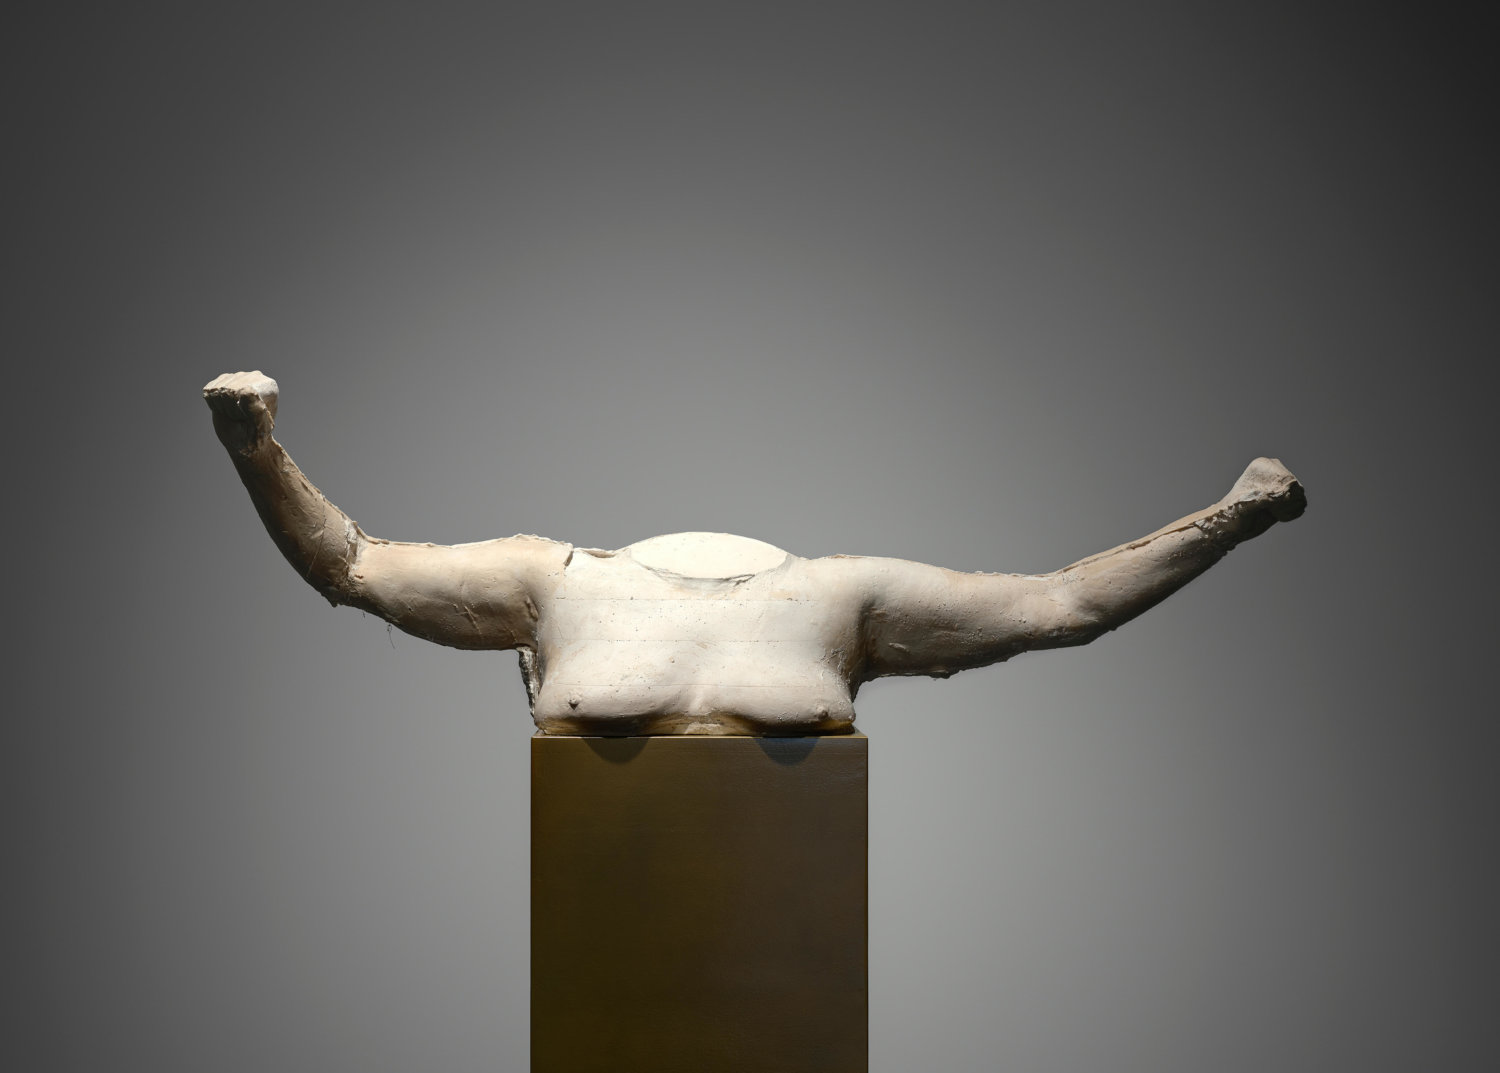 Skulptur von Sarah Lucas zeigt einen weiblichen Oberkörper mit ausgestreckten Armen.